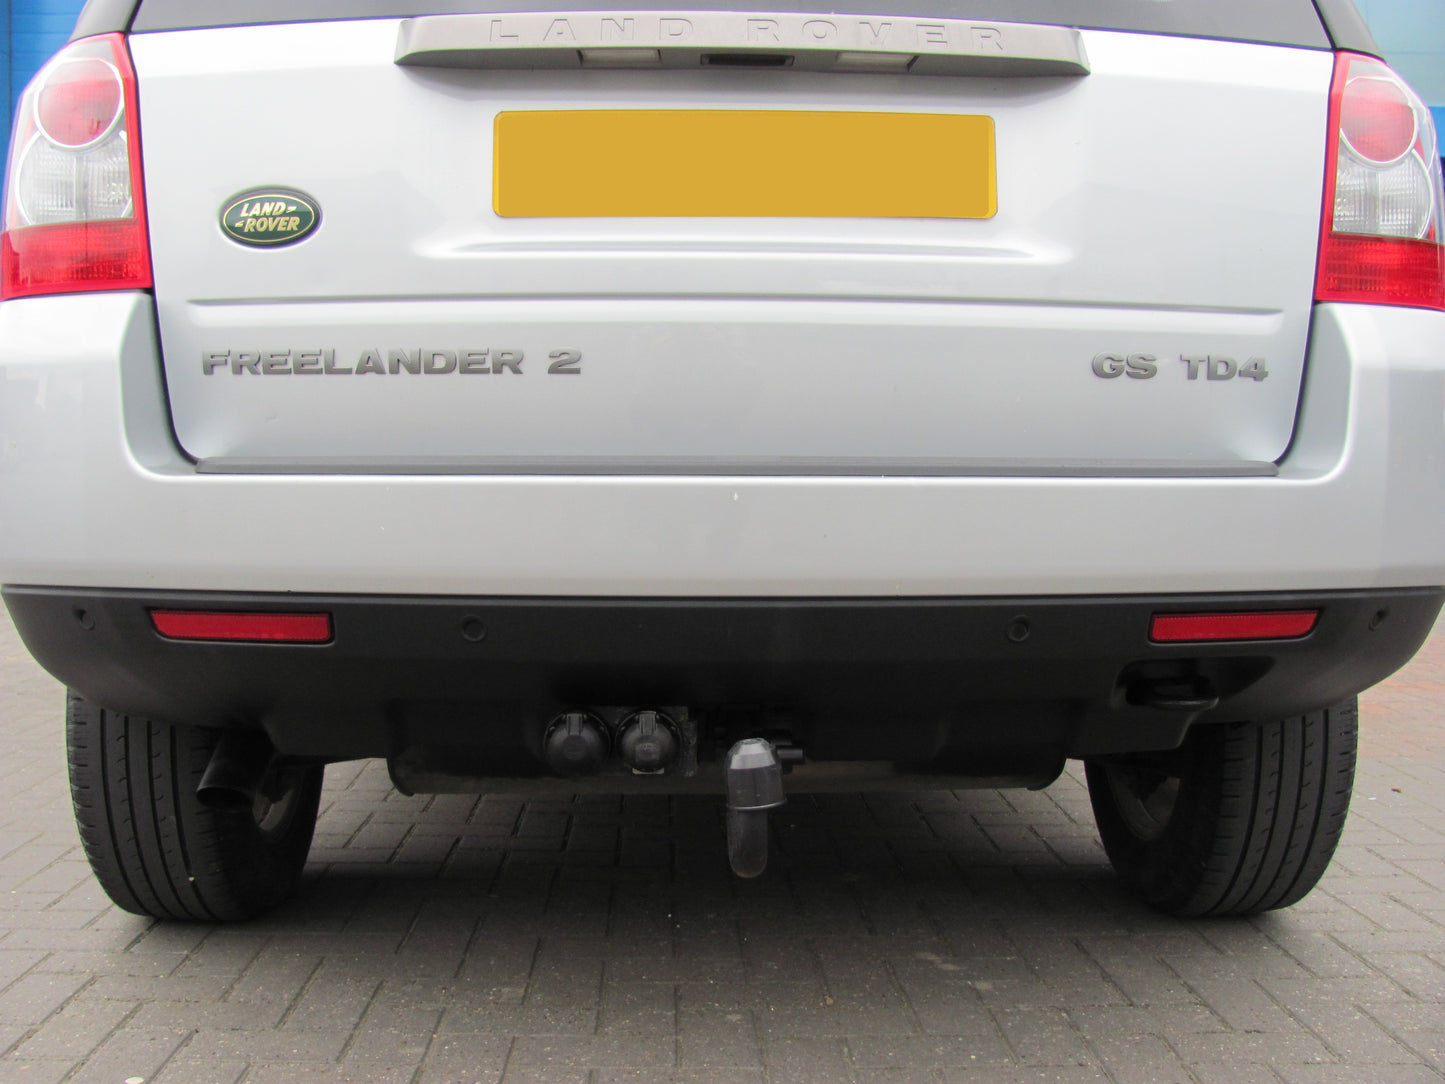 Rear Bumper Reflector for Land Rover Freelander 2 - Aftermarket  - RIGHT RH